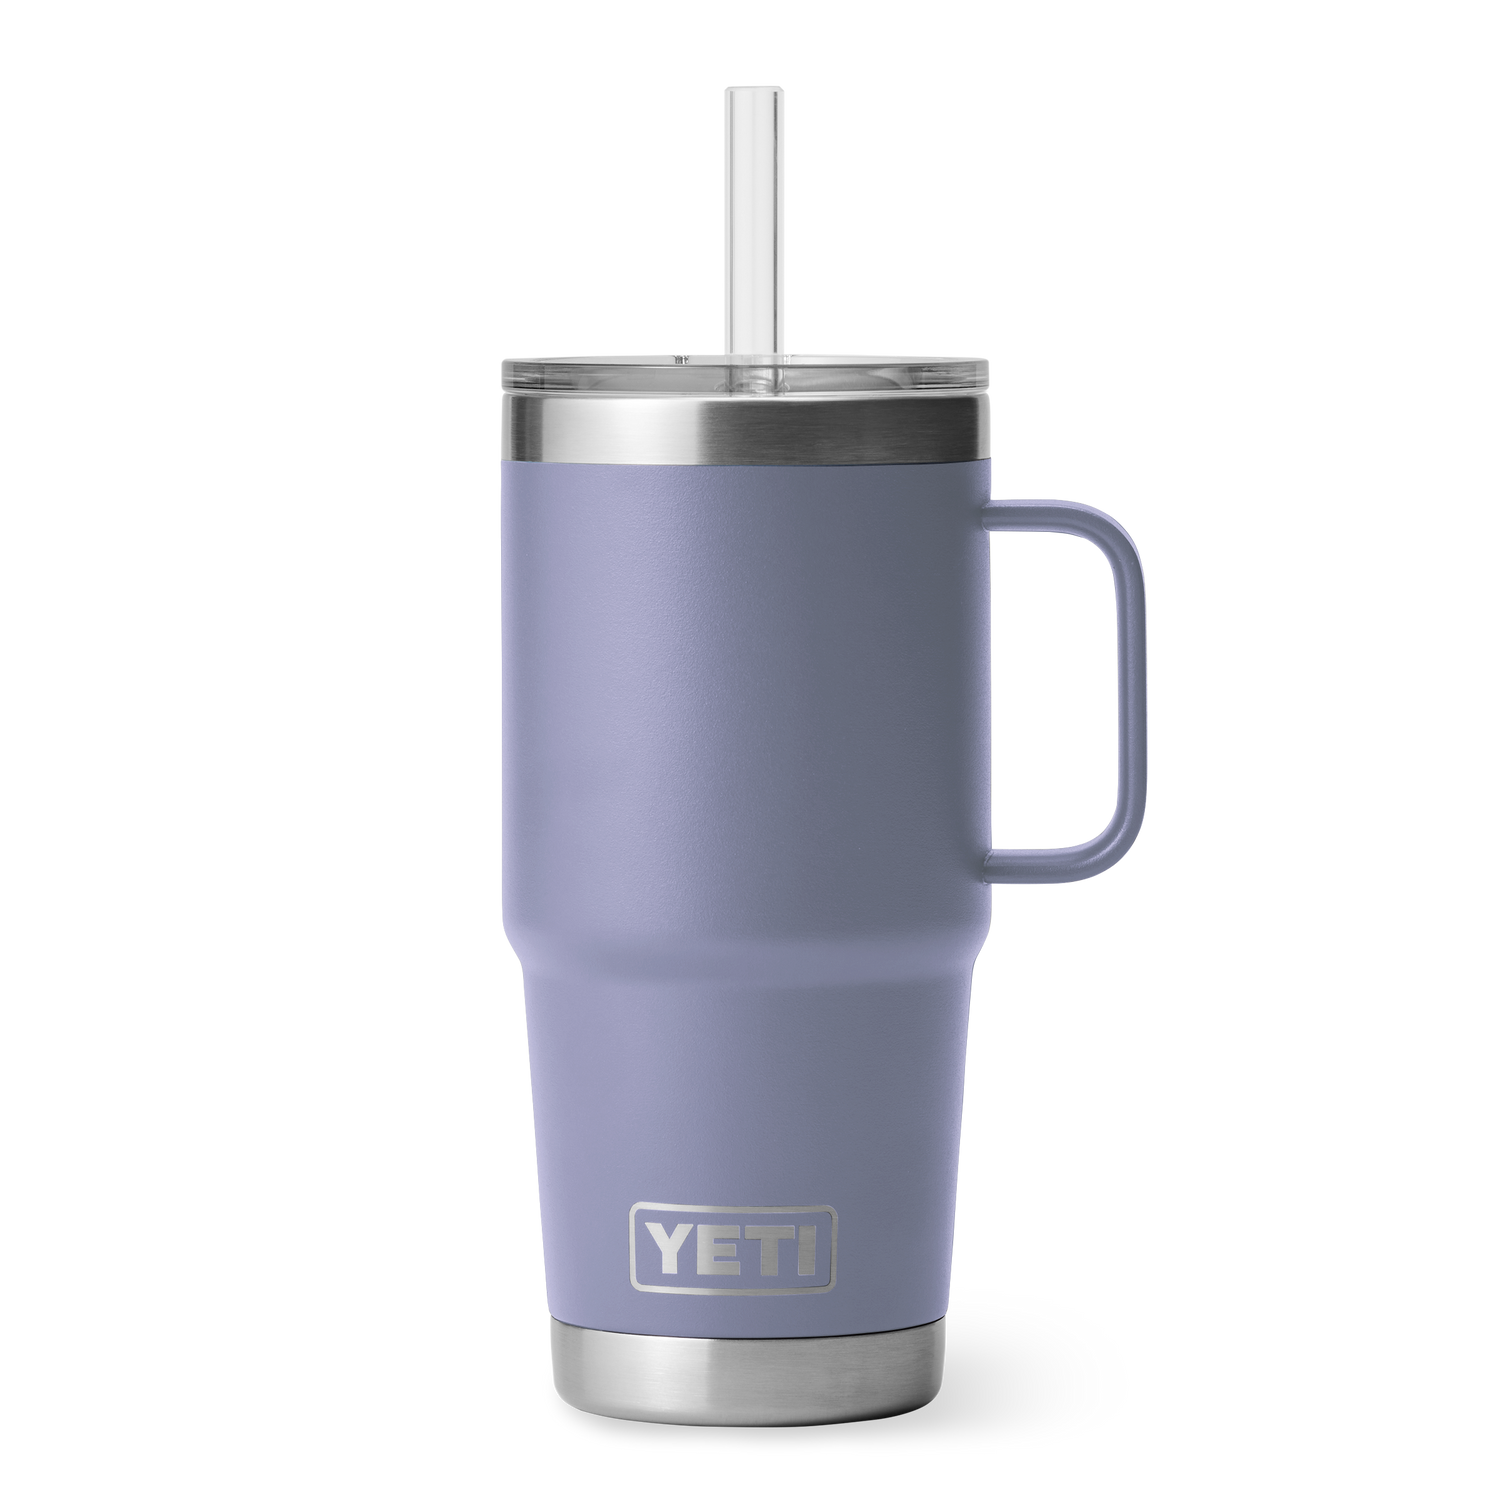 YETI Rambler Stackable Mugs Black - Slam Jam® Official Store